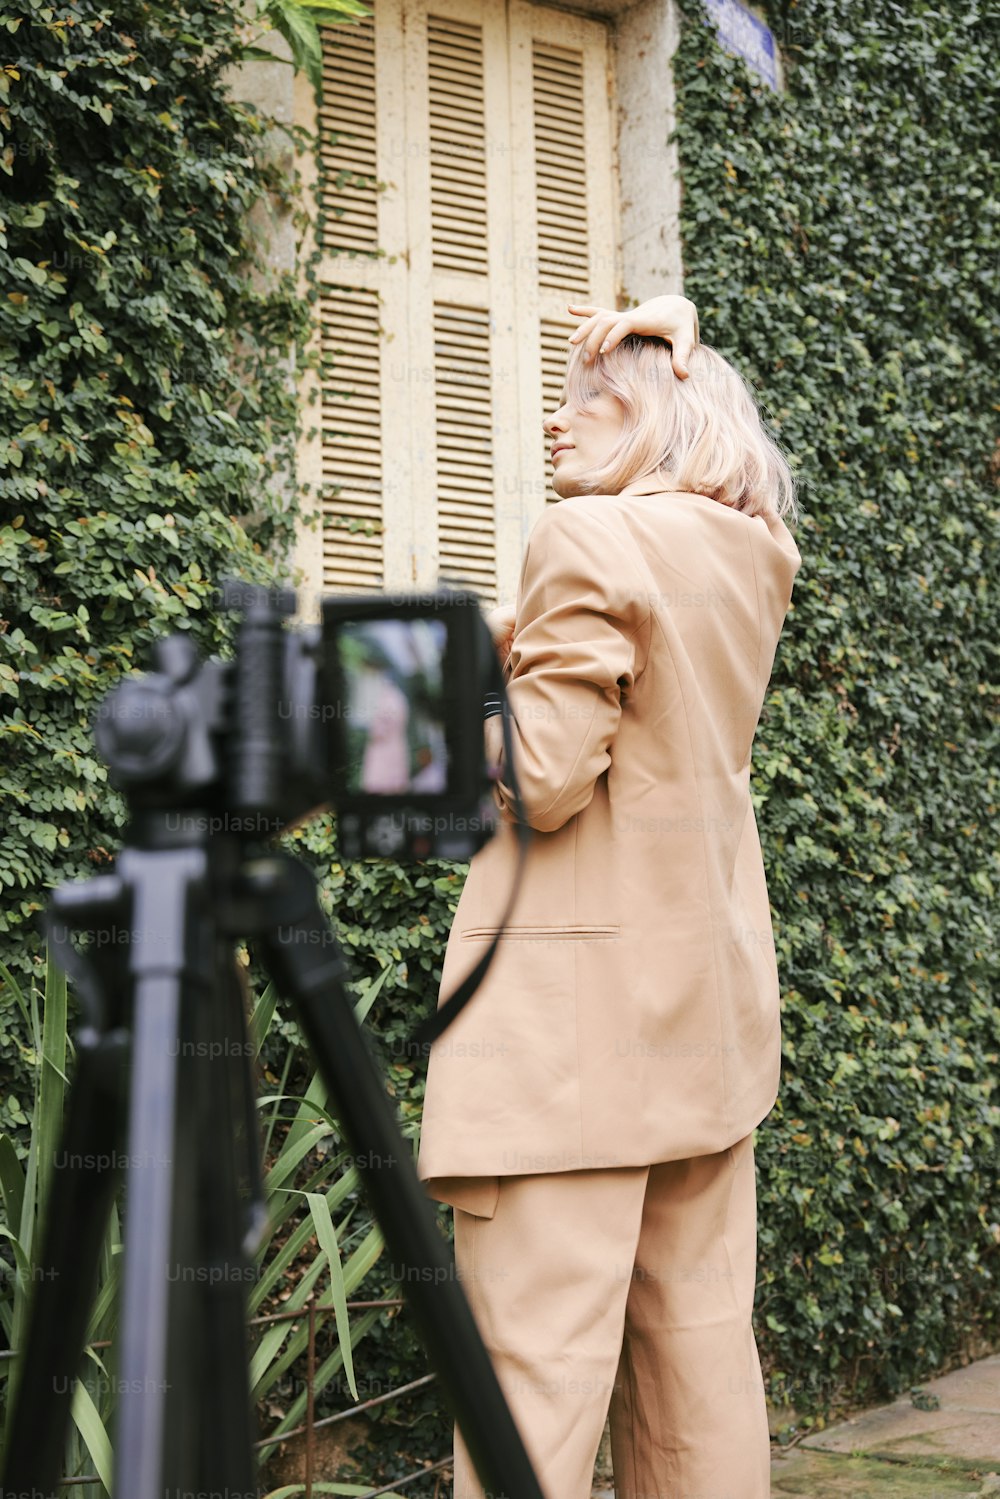 una donna in piedi davanti a una macchina fotografica che scatta una foto